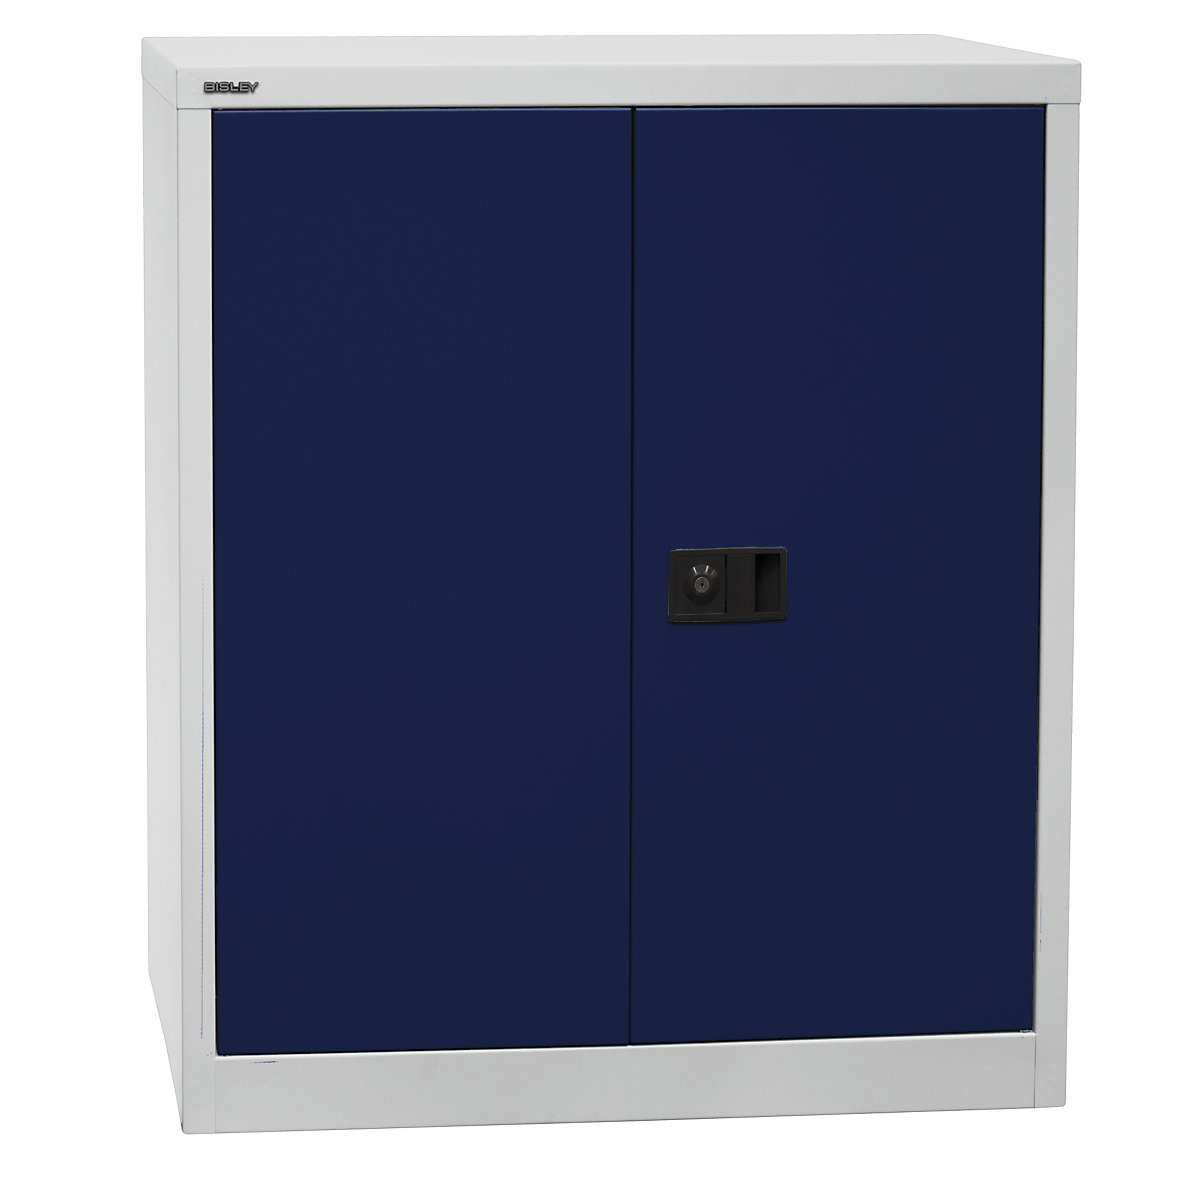 UNIVERSAL skriňa s krídlovými dverami – BISLEY, v x š x h 1000 x 914 x 400 mm, 1 polica, 2 výšky zakladačov, svetlošedá / oxfordská modrá-6